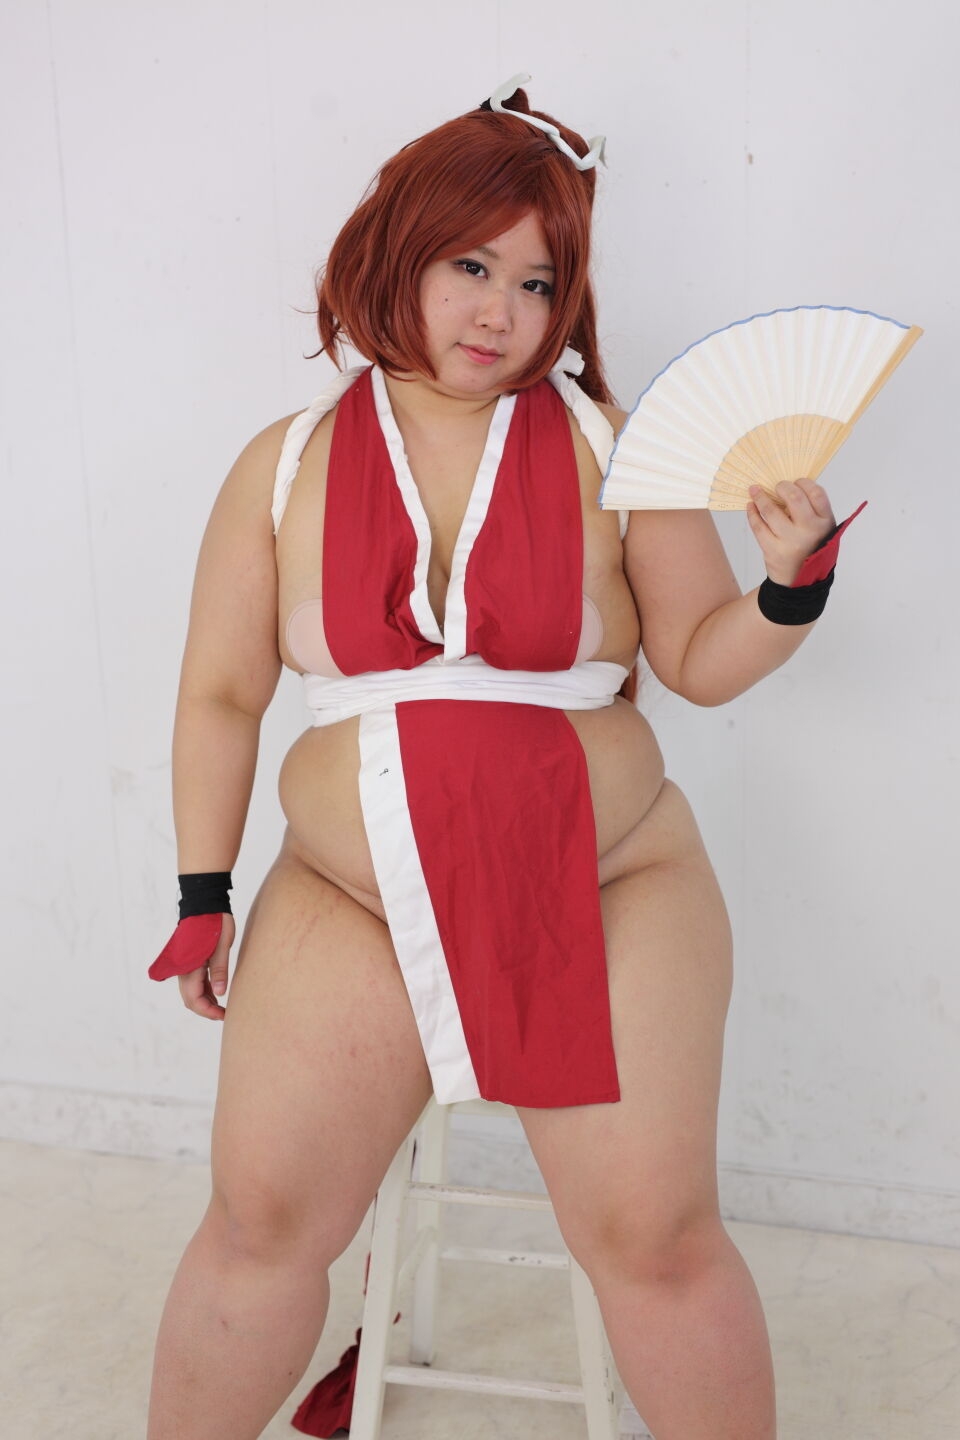 (渡辺さくらん) FIGHT FAT LADY (Sakuran Watanabe) (Mai Shiranui - Fatal Fury) (Chun-Li - Street Fighter) 130